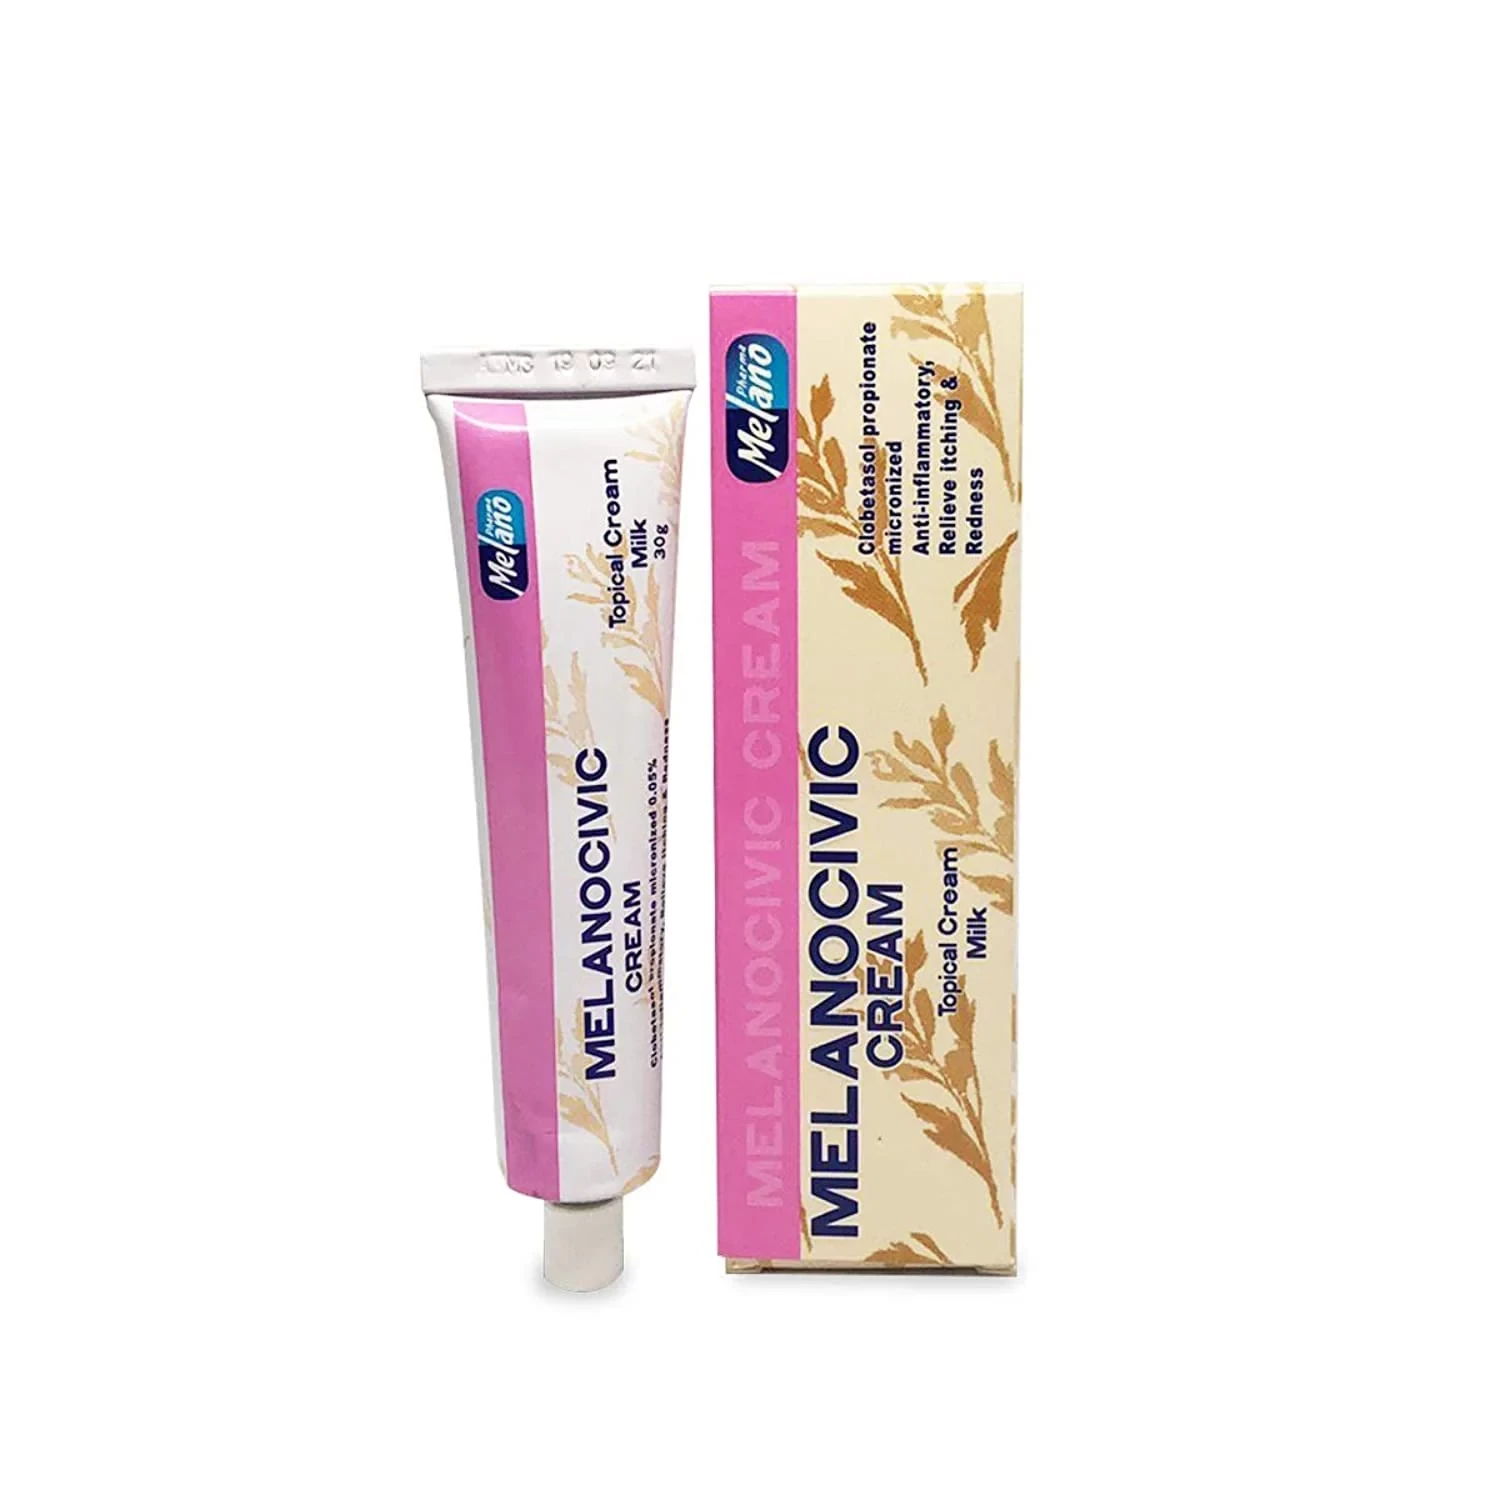 Melano Civic Milk Cream For Skin Lightening 30g